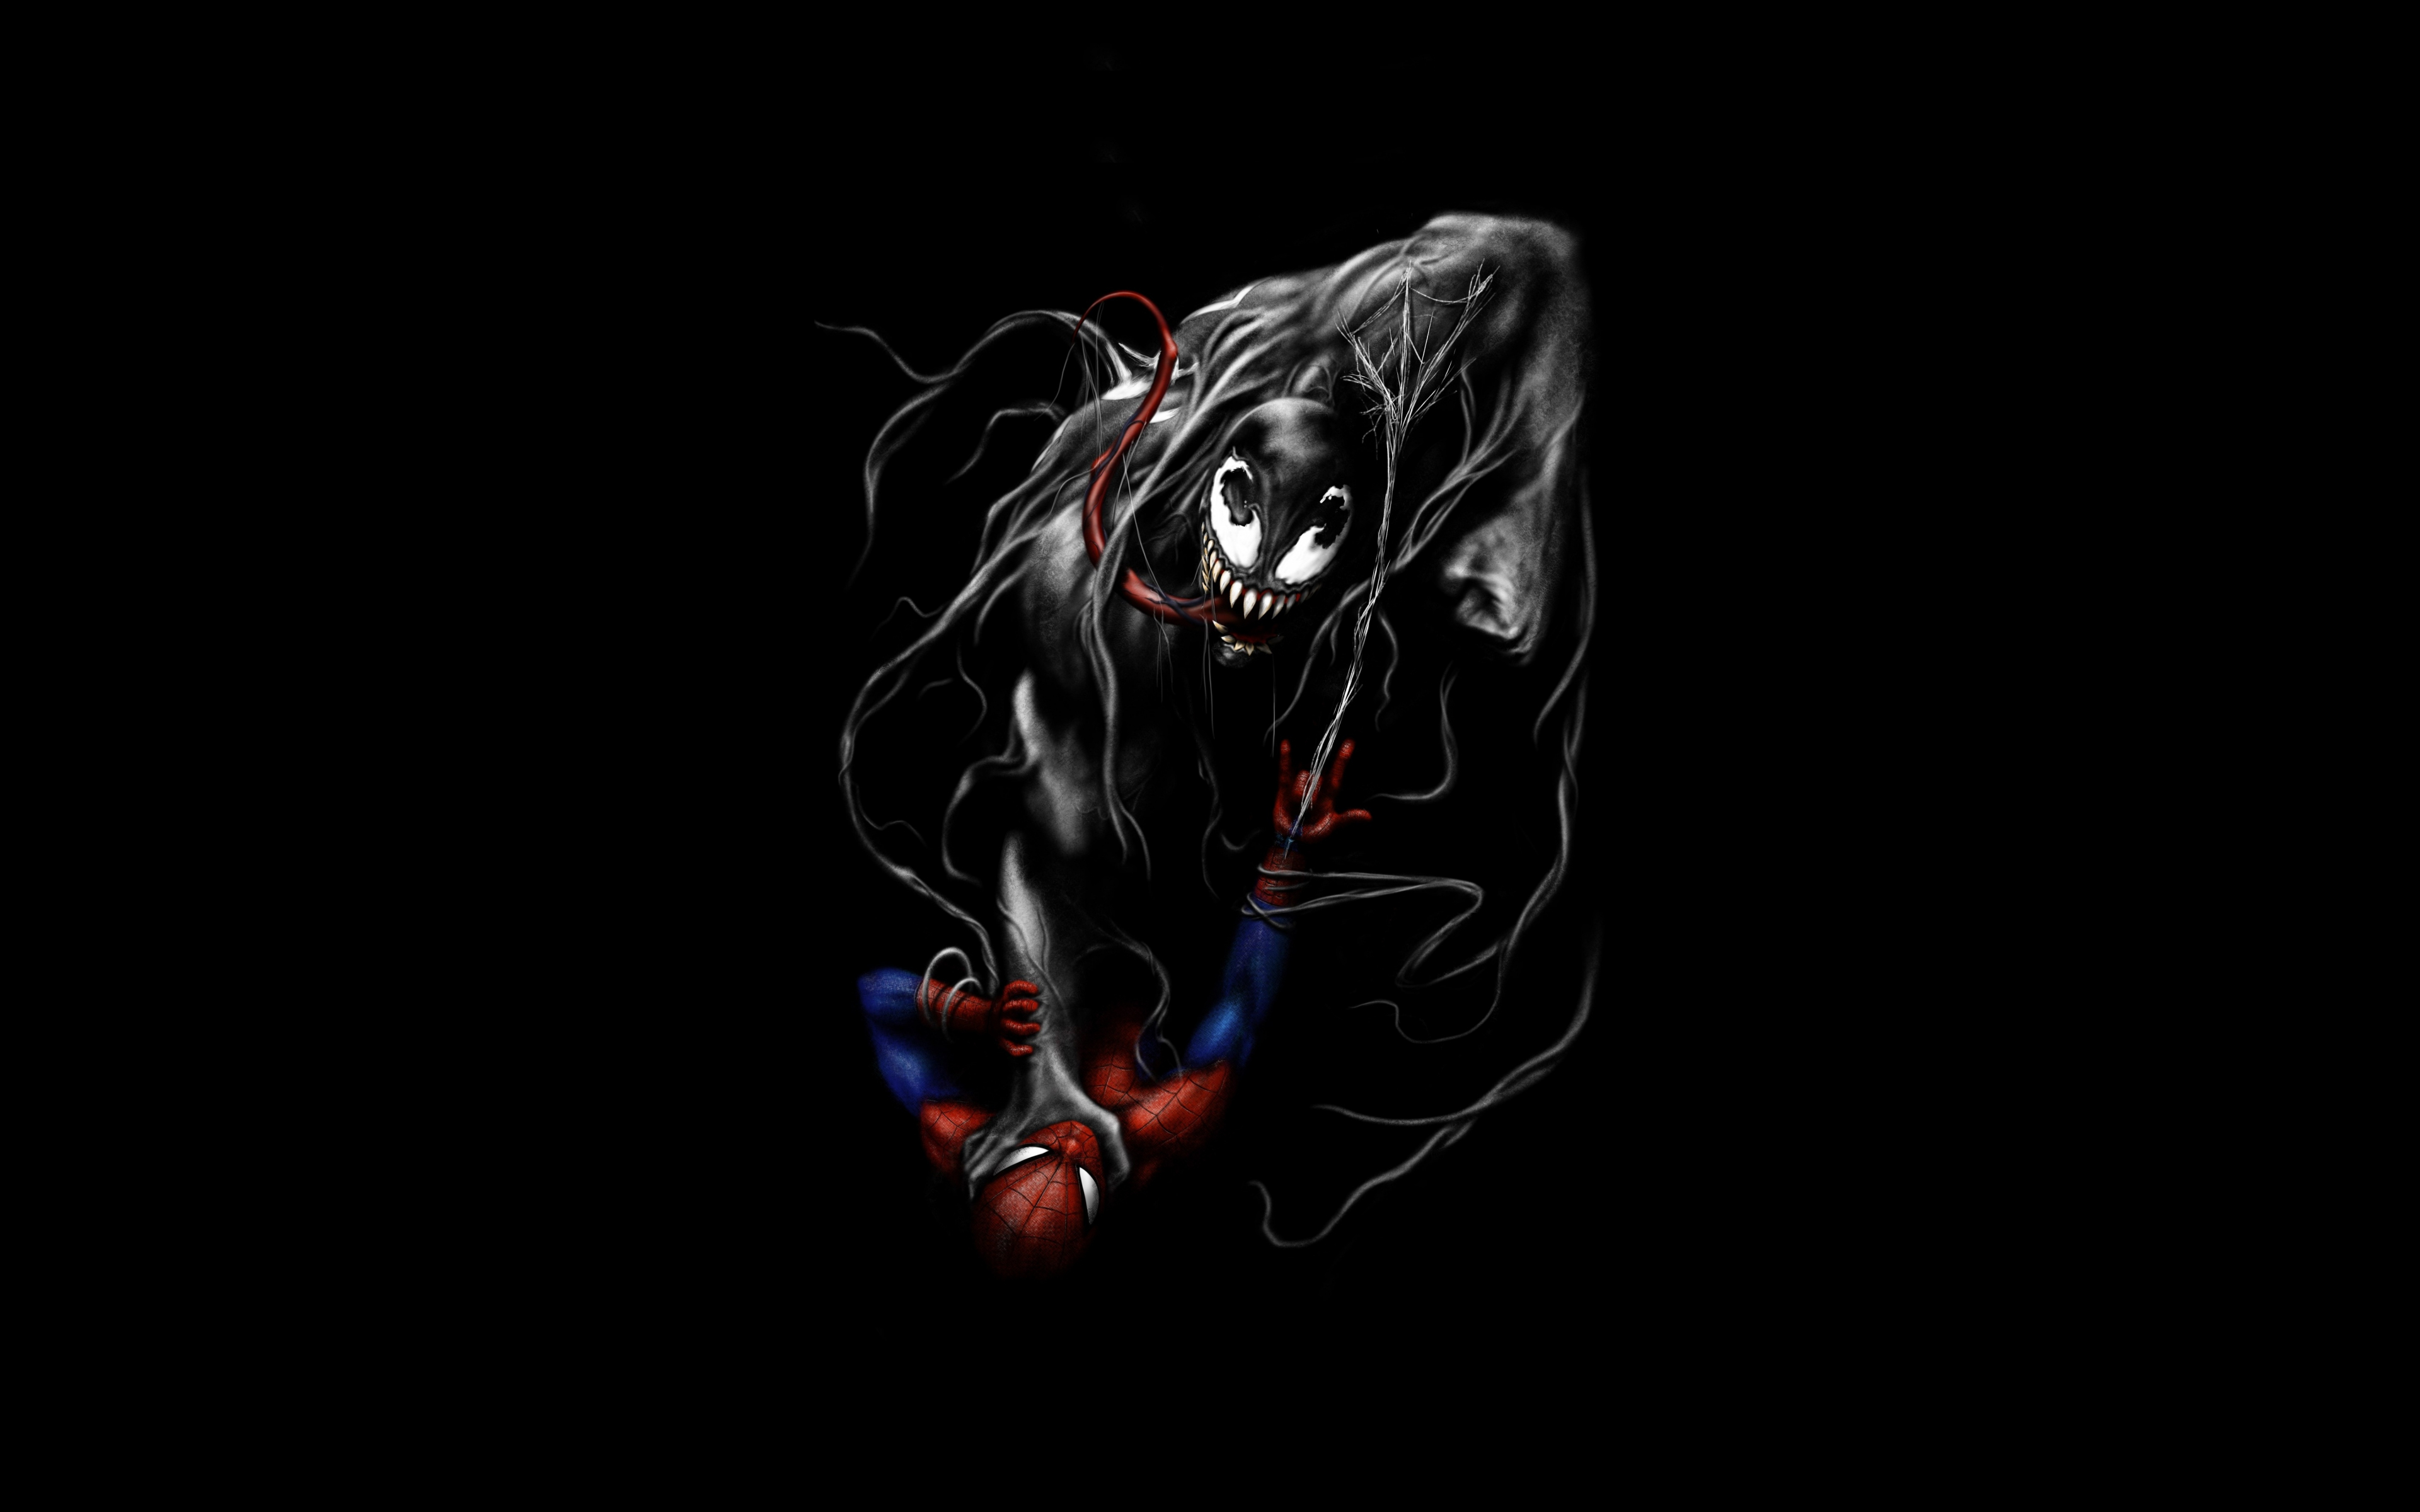 Download wallpaper 3840x2400 venom and spider-man, fight, black and dark,  minimal, art 4k wallaper, 4k ultra hd 16:10 wallpaper, 3840x2400 hd  background, 10437